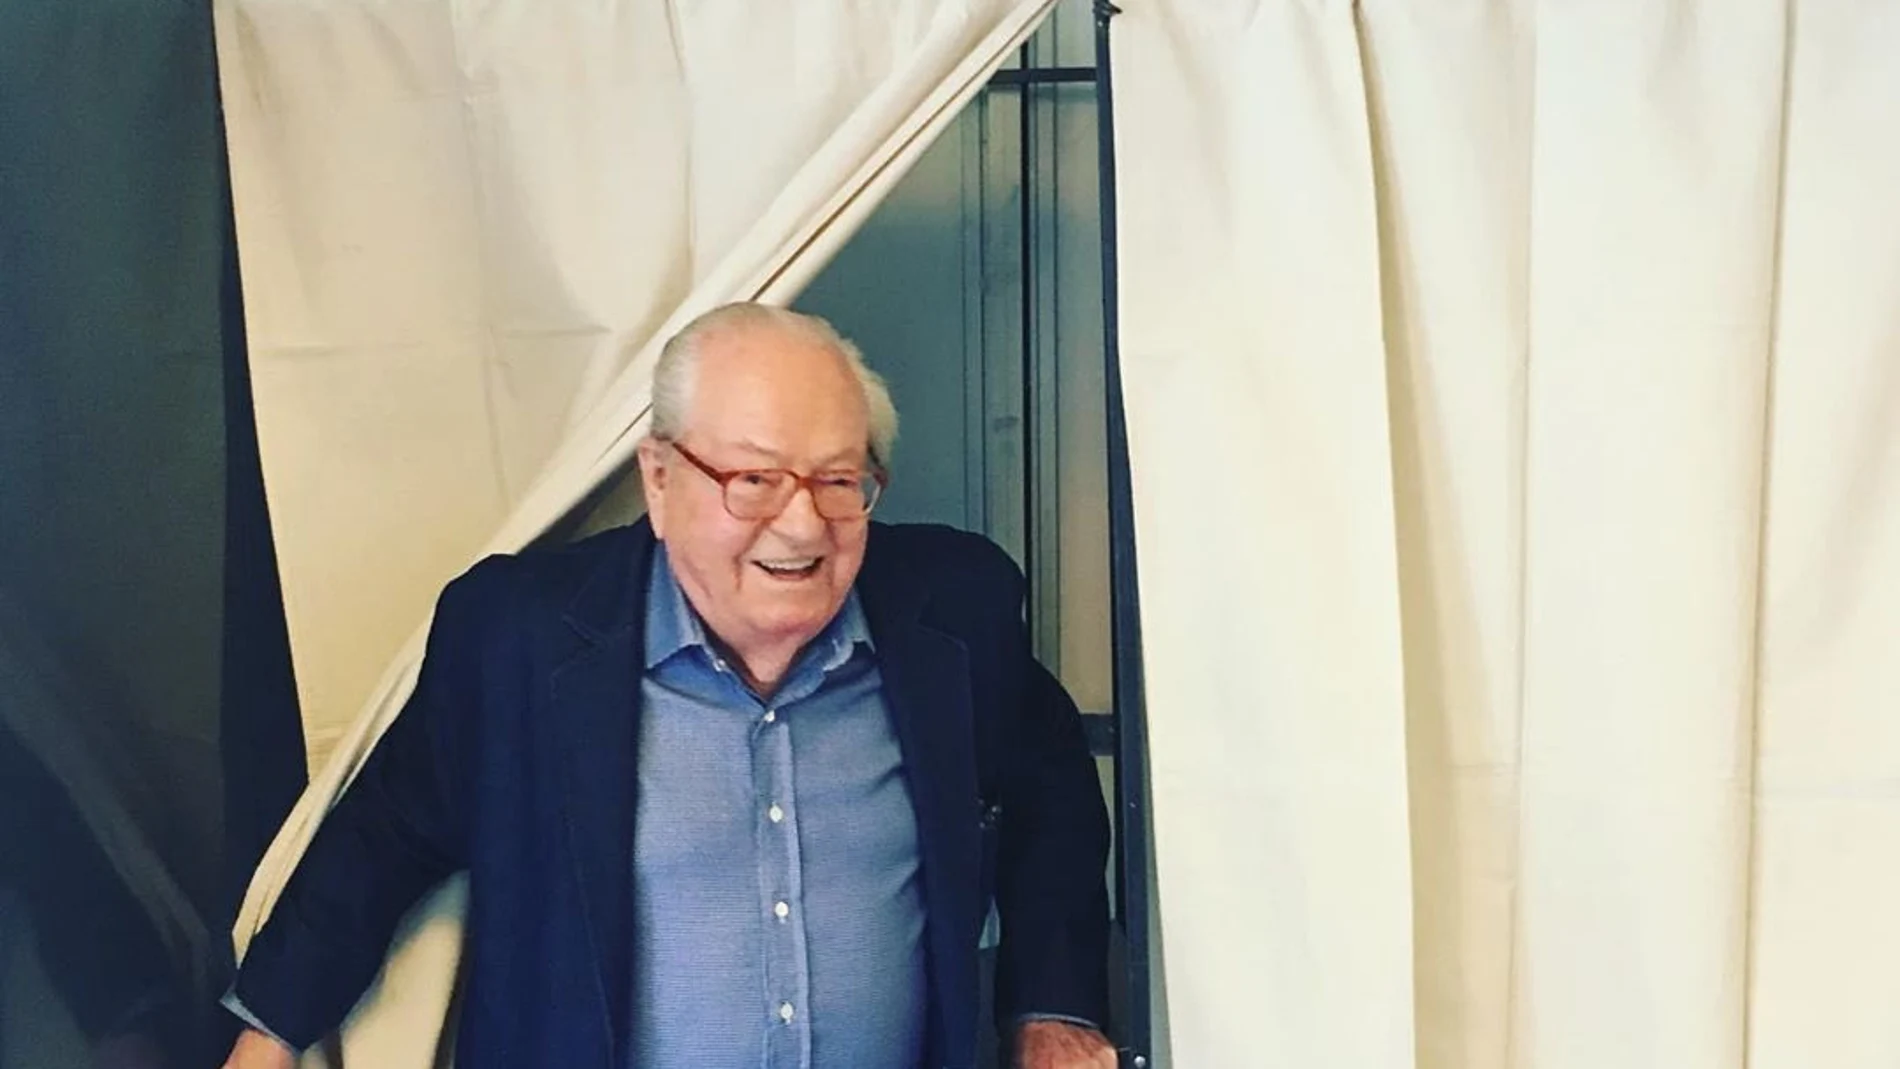 El histórico político francés Jean Marie Le Pen, ingresado en el hospital tras sufrir un ictus